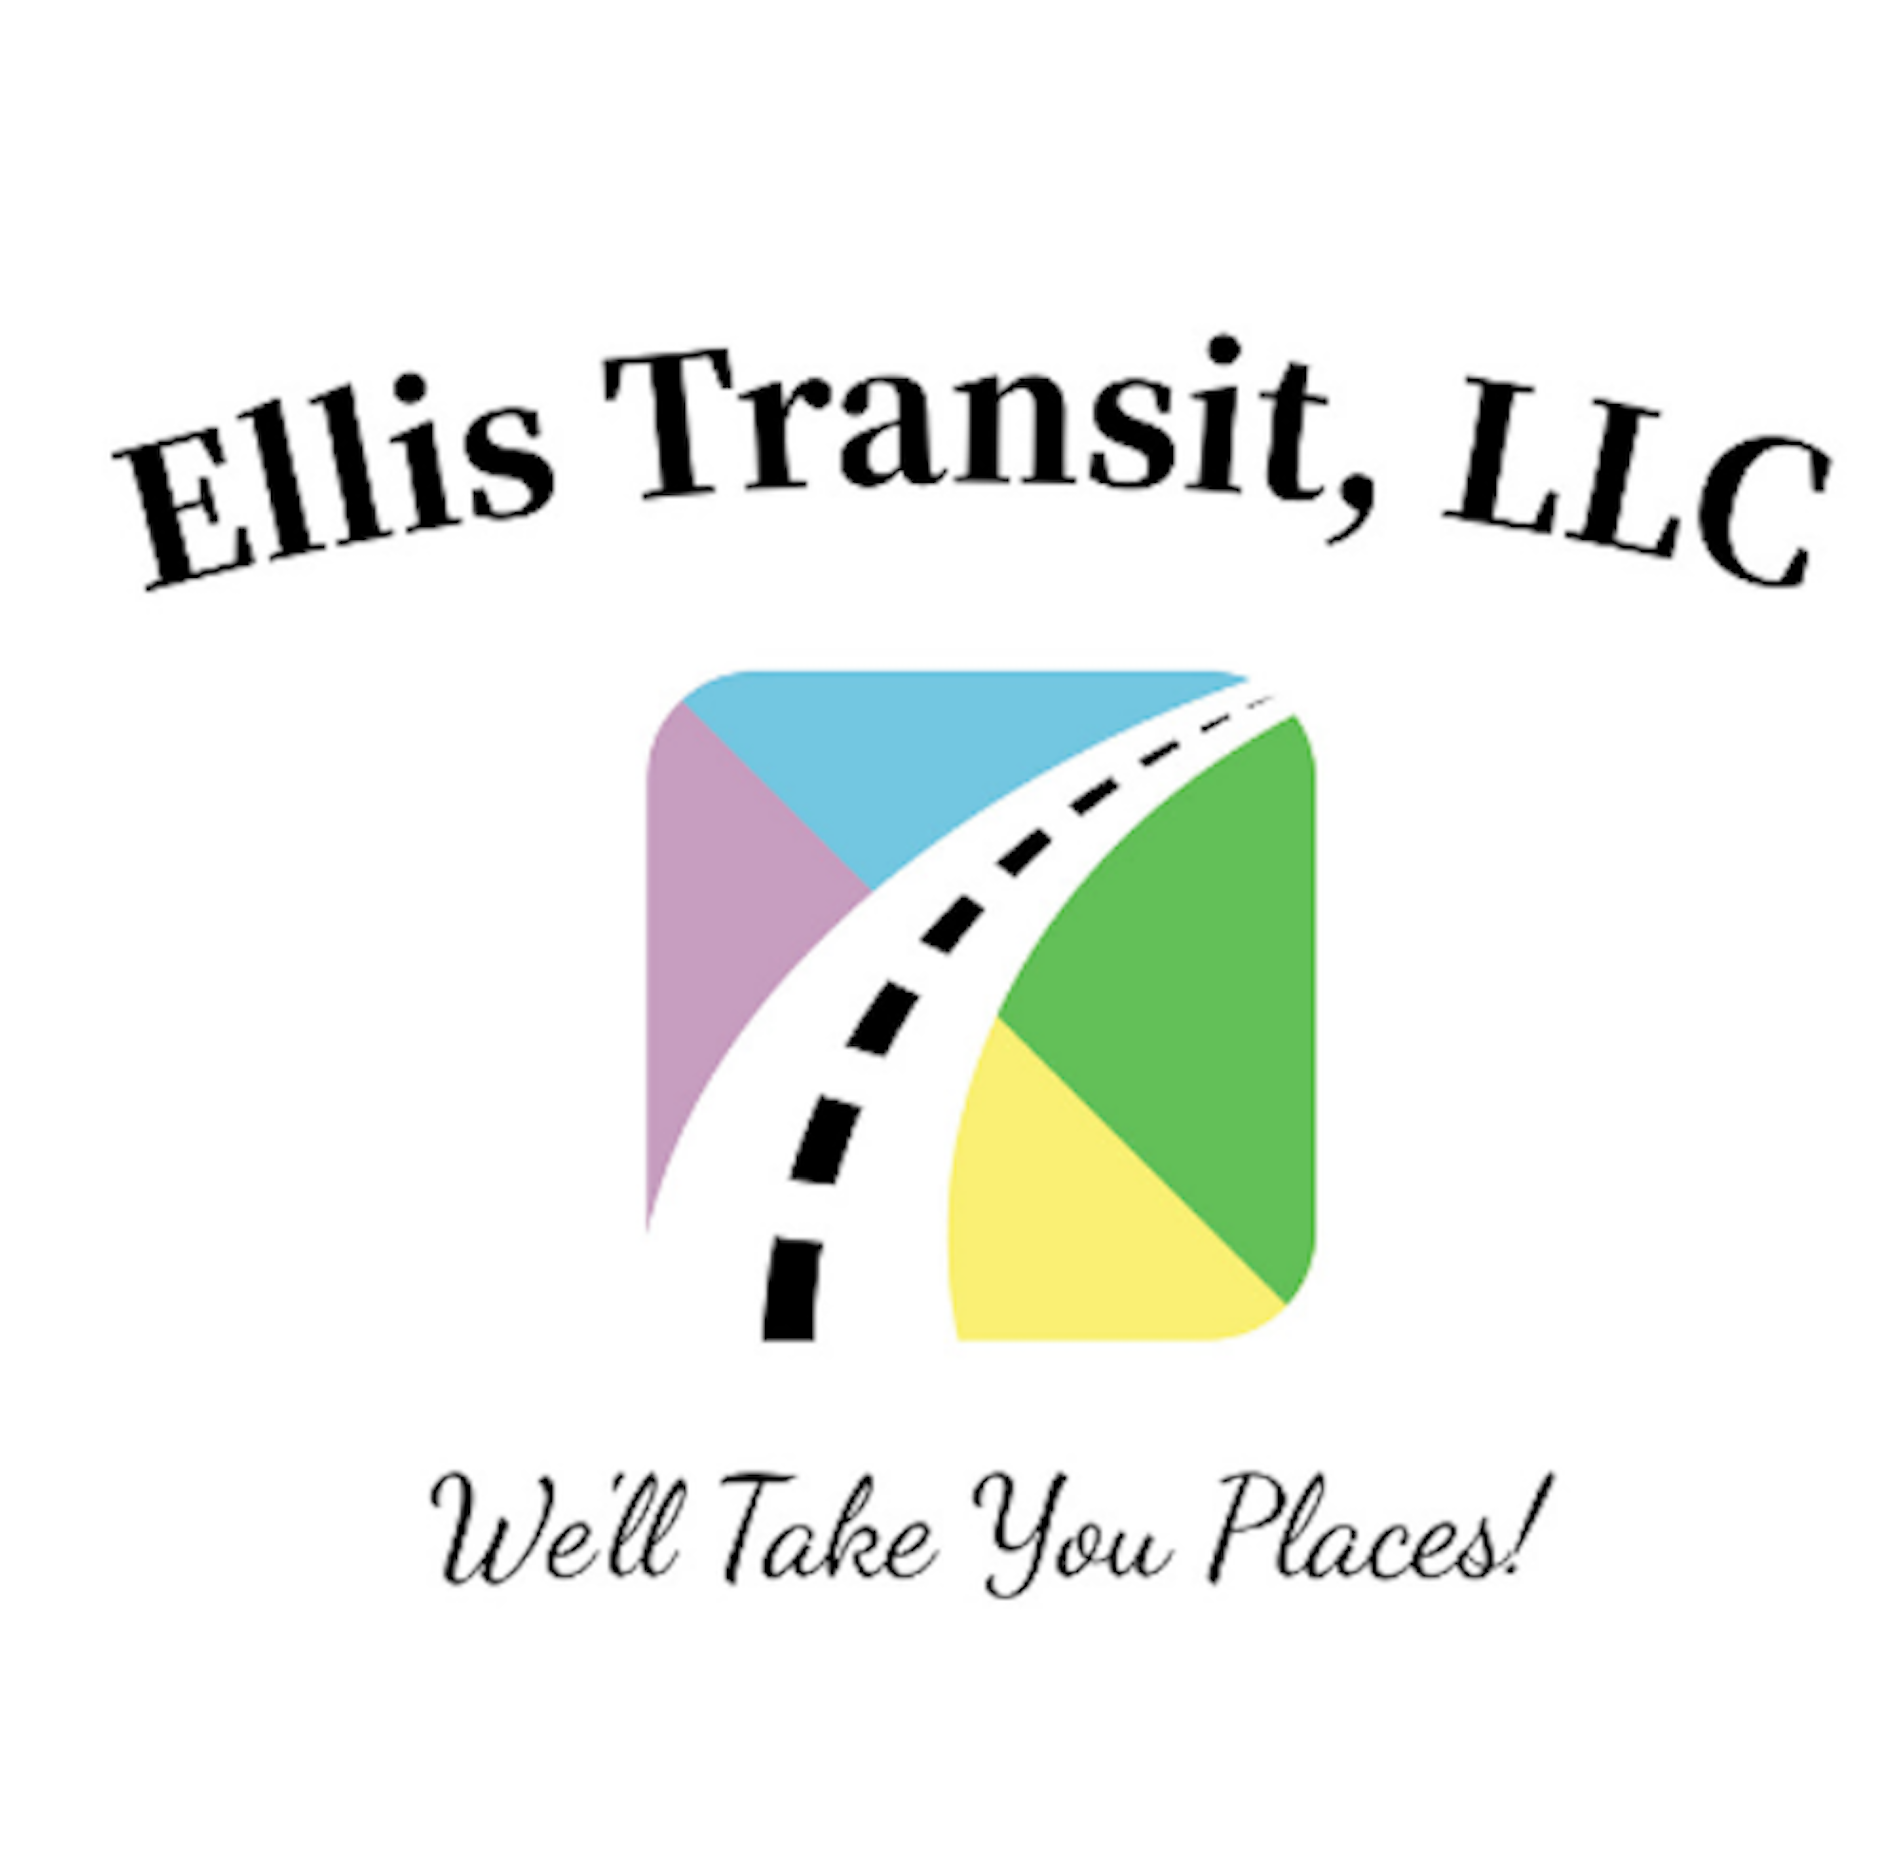 Ellis Transit - We'll Take You Places!